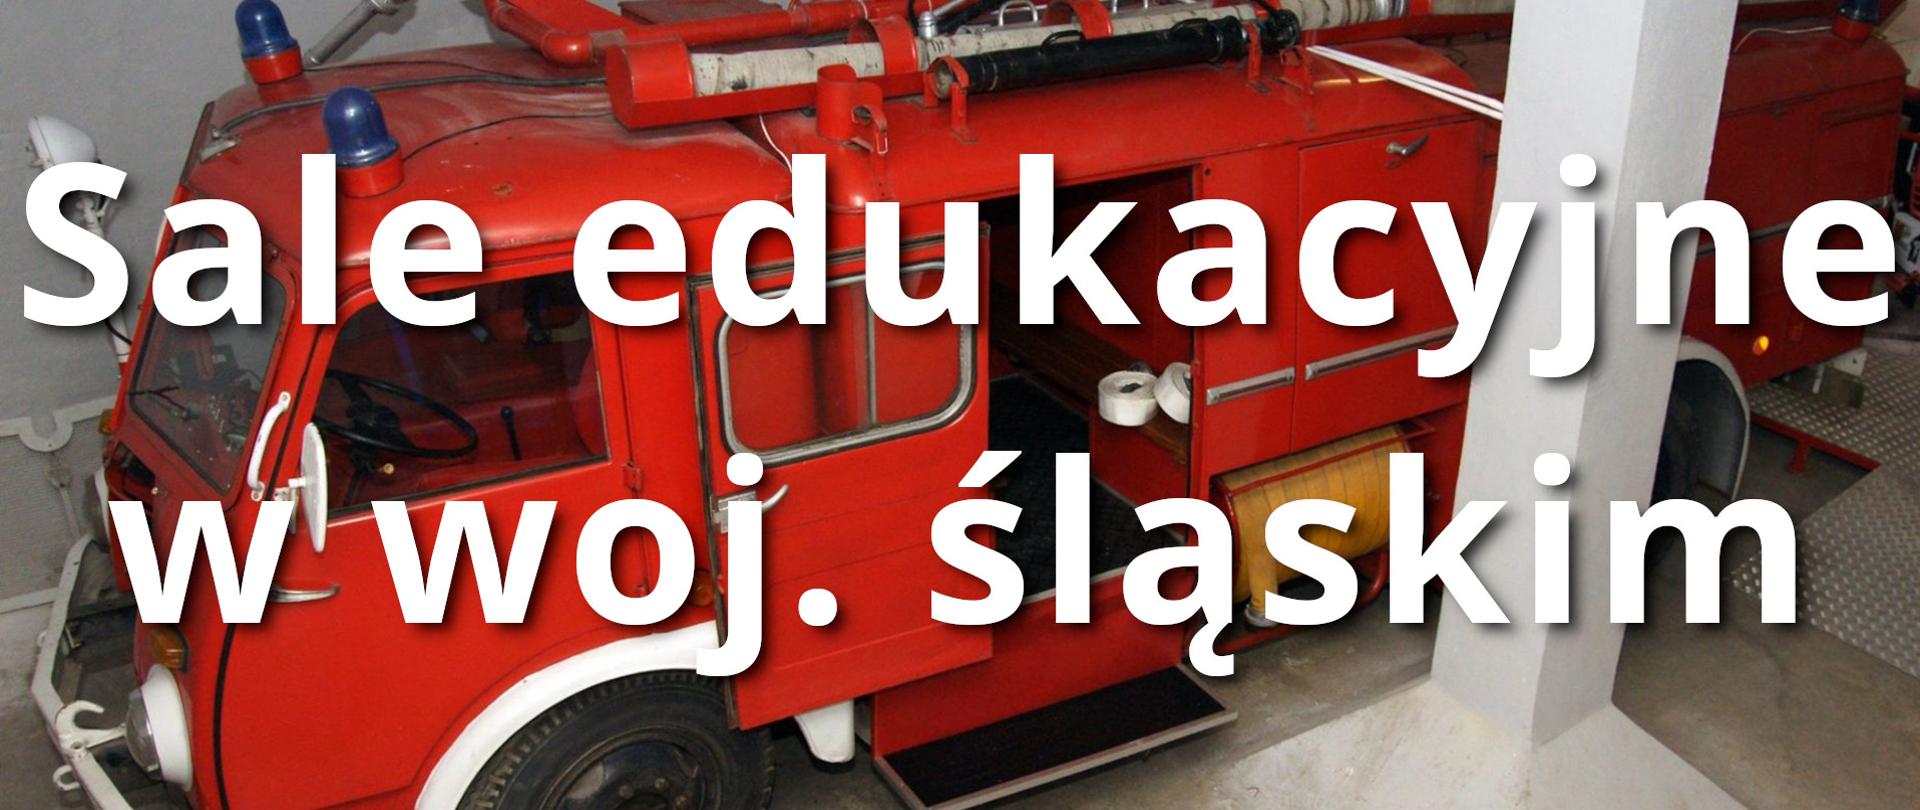 Ilustracja przedstawia w tle zabytkowy pojazd pożarniczy, a na pierwszym planie duży biały napis sale edukacyjne w woj, śląskim.